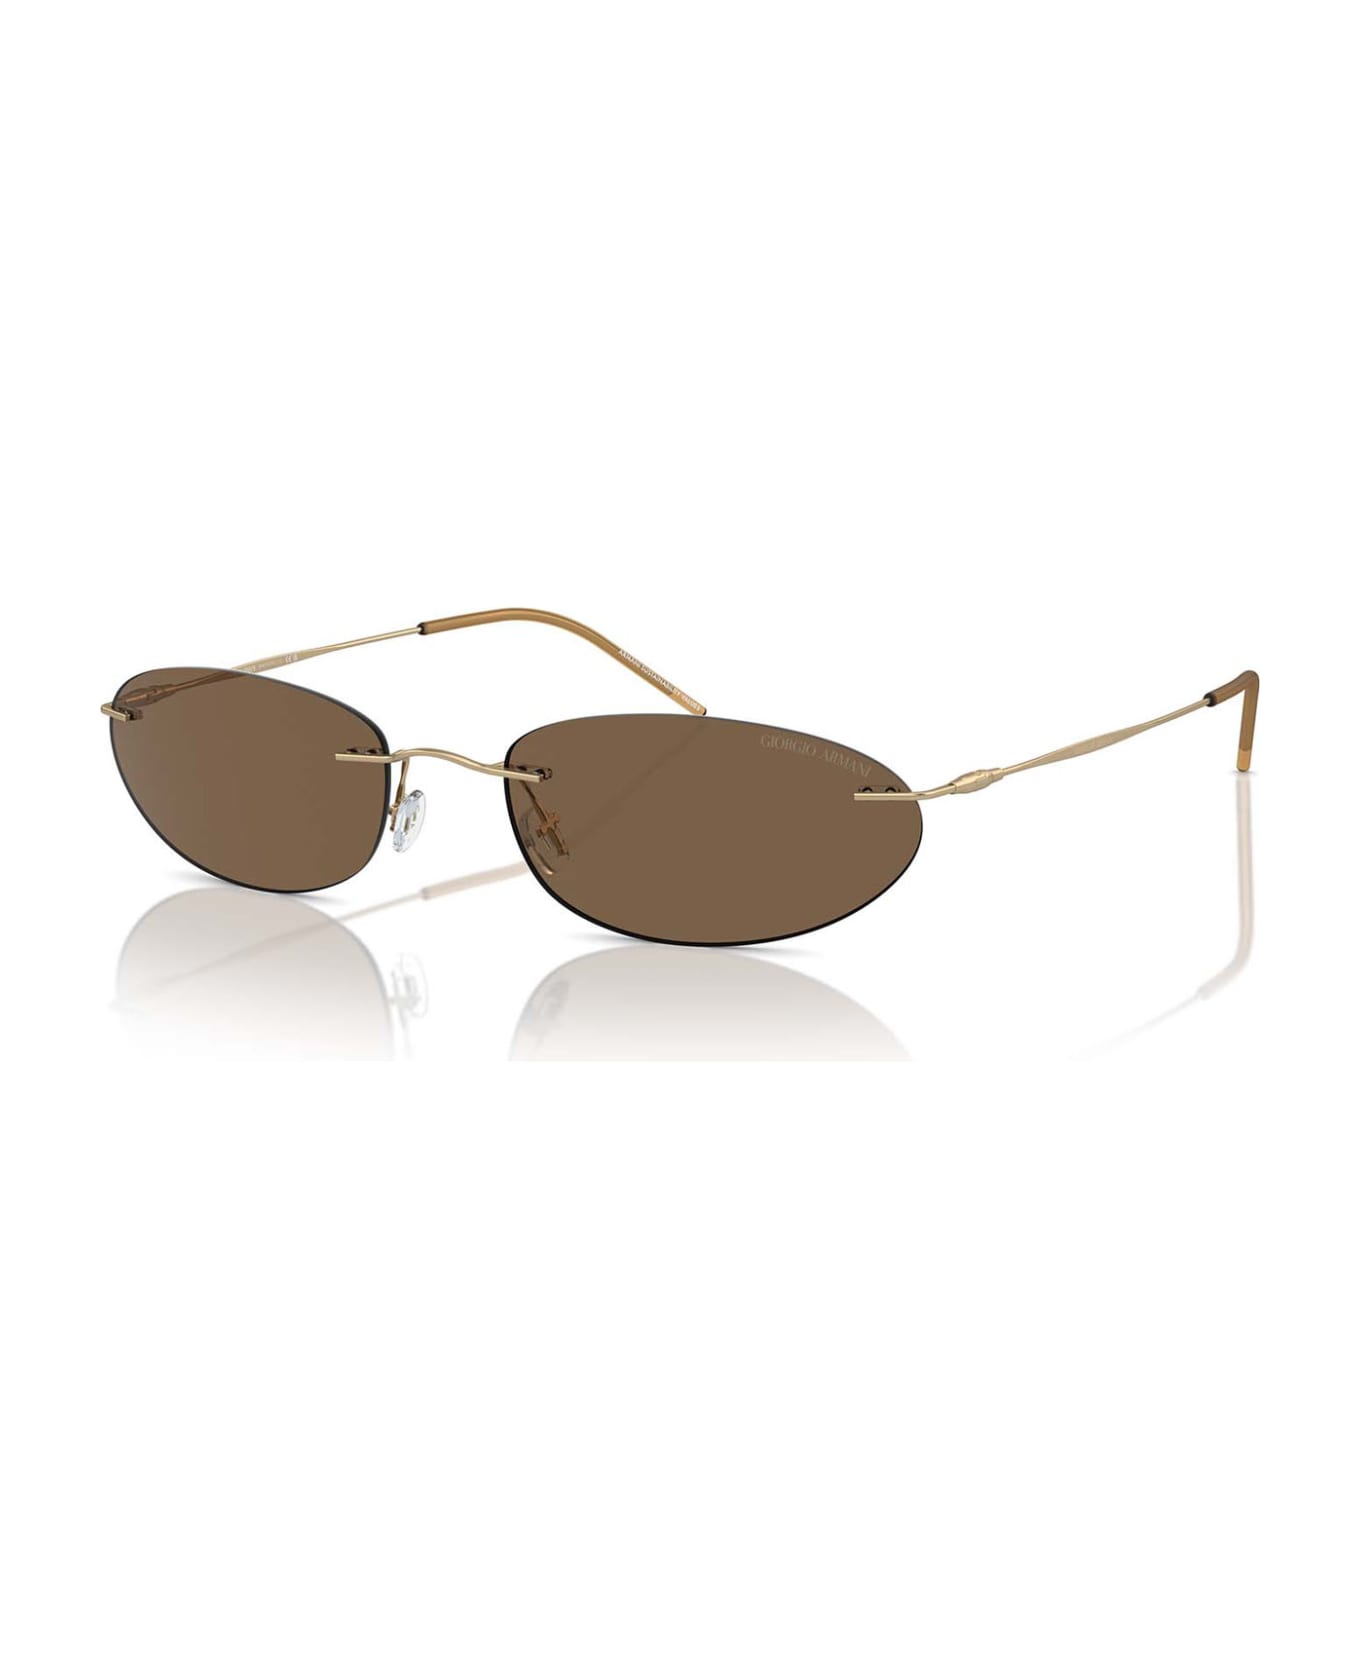 Giorgio Armani Ar1508m Matte Pale Gold Sunglasses - Matte Pale Gold